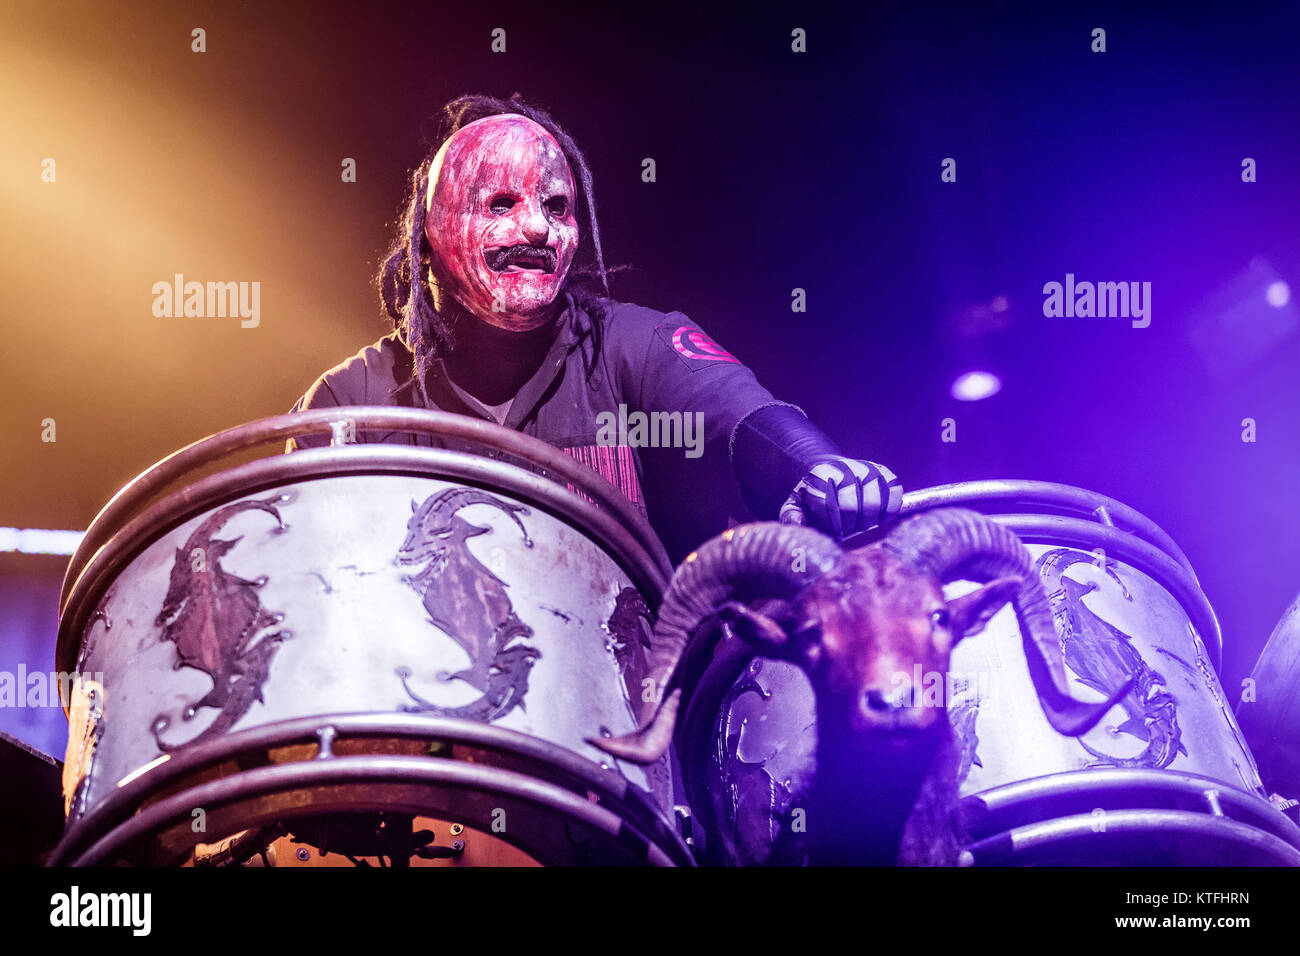 La banda de heavy metal Americana Slipknot realiza un concierto en vivo en  Oslo Spektrum. Aquí el músico Shawn Crahan "Clown" en la percusión es visto  en vivo en el escenario. Noruega,